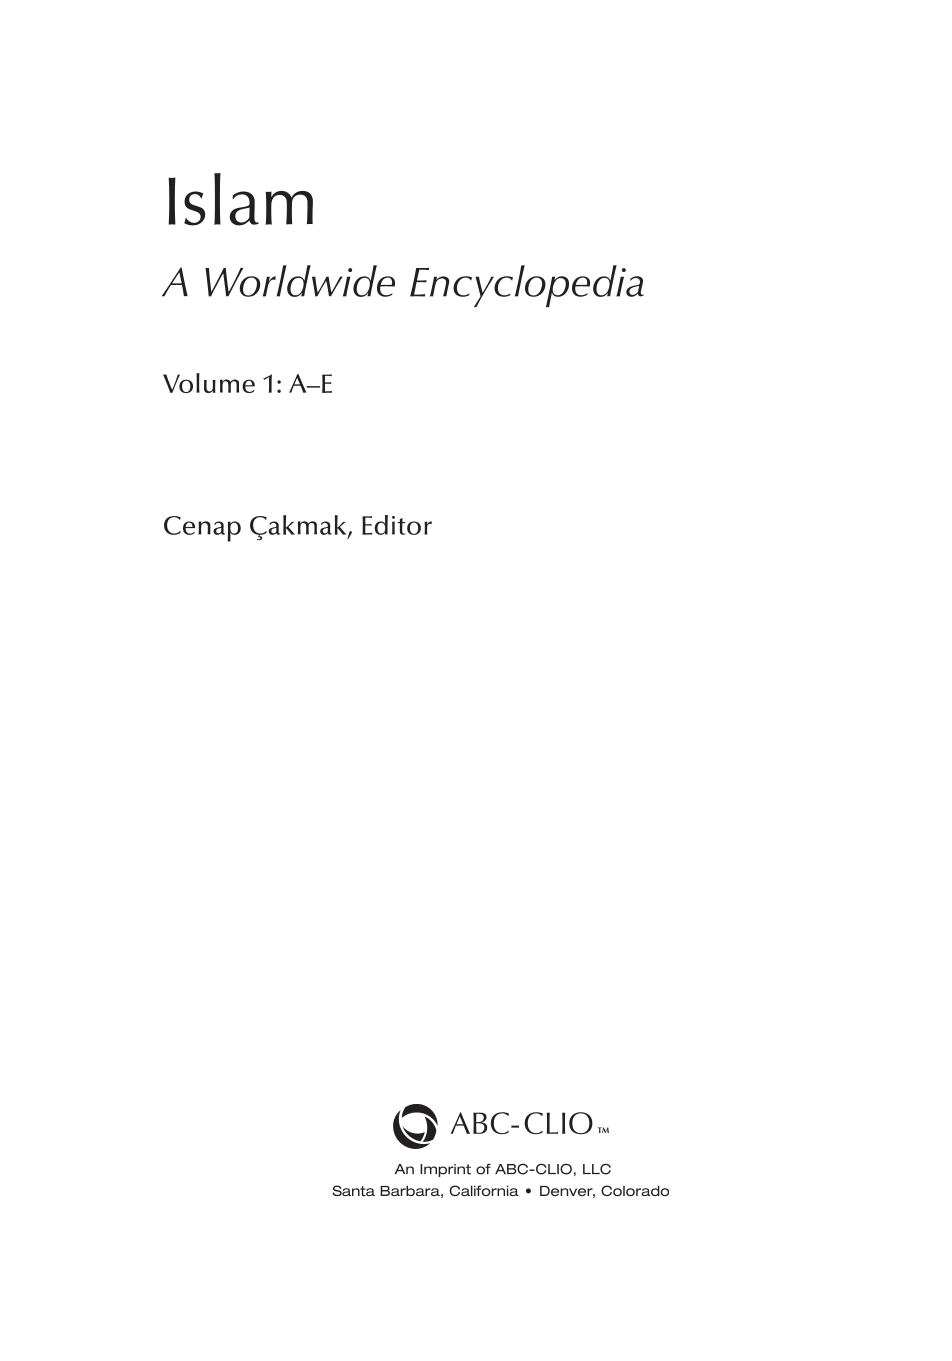 Islam: A Worldwide Encyclopedia [4 volumes] page iii